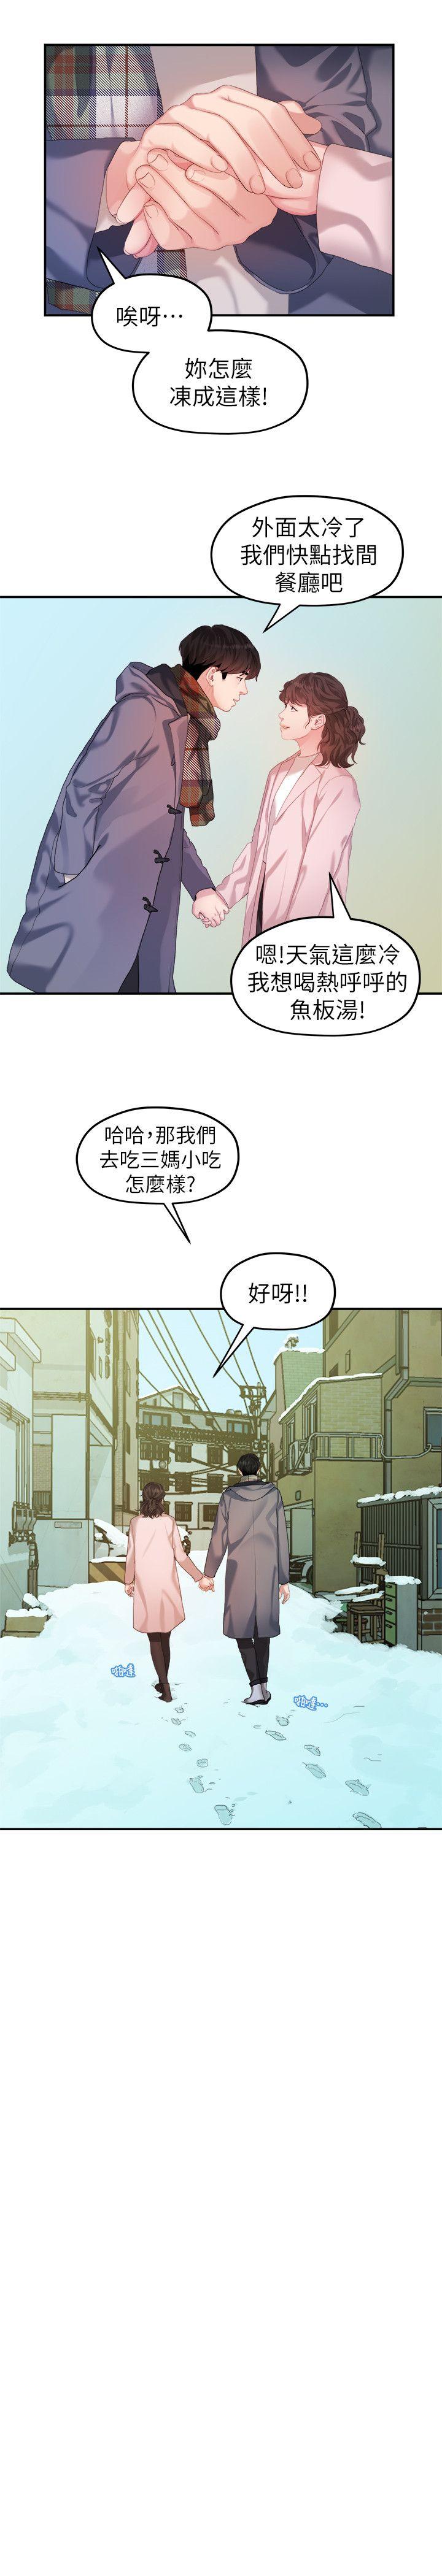 韩国污漫画 我們的非常關系 第42话-忘掉上一段恋情的方法 15